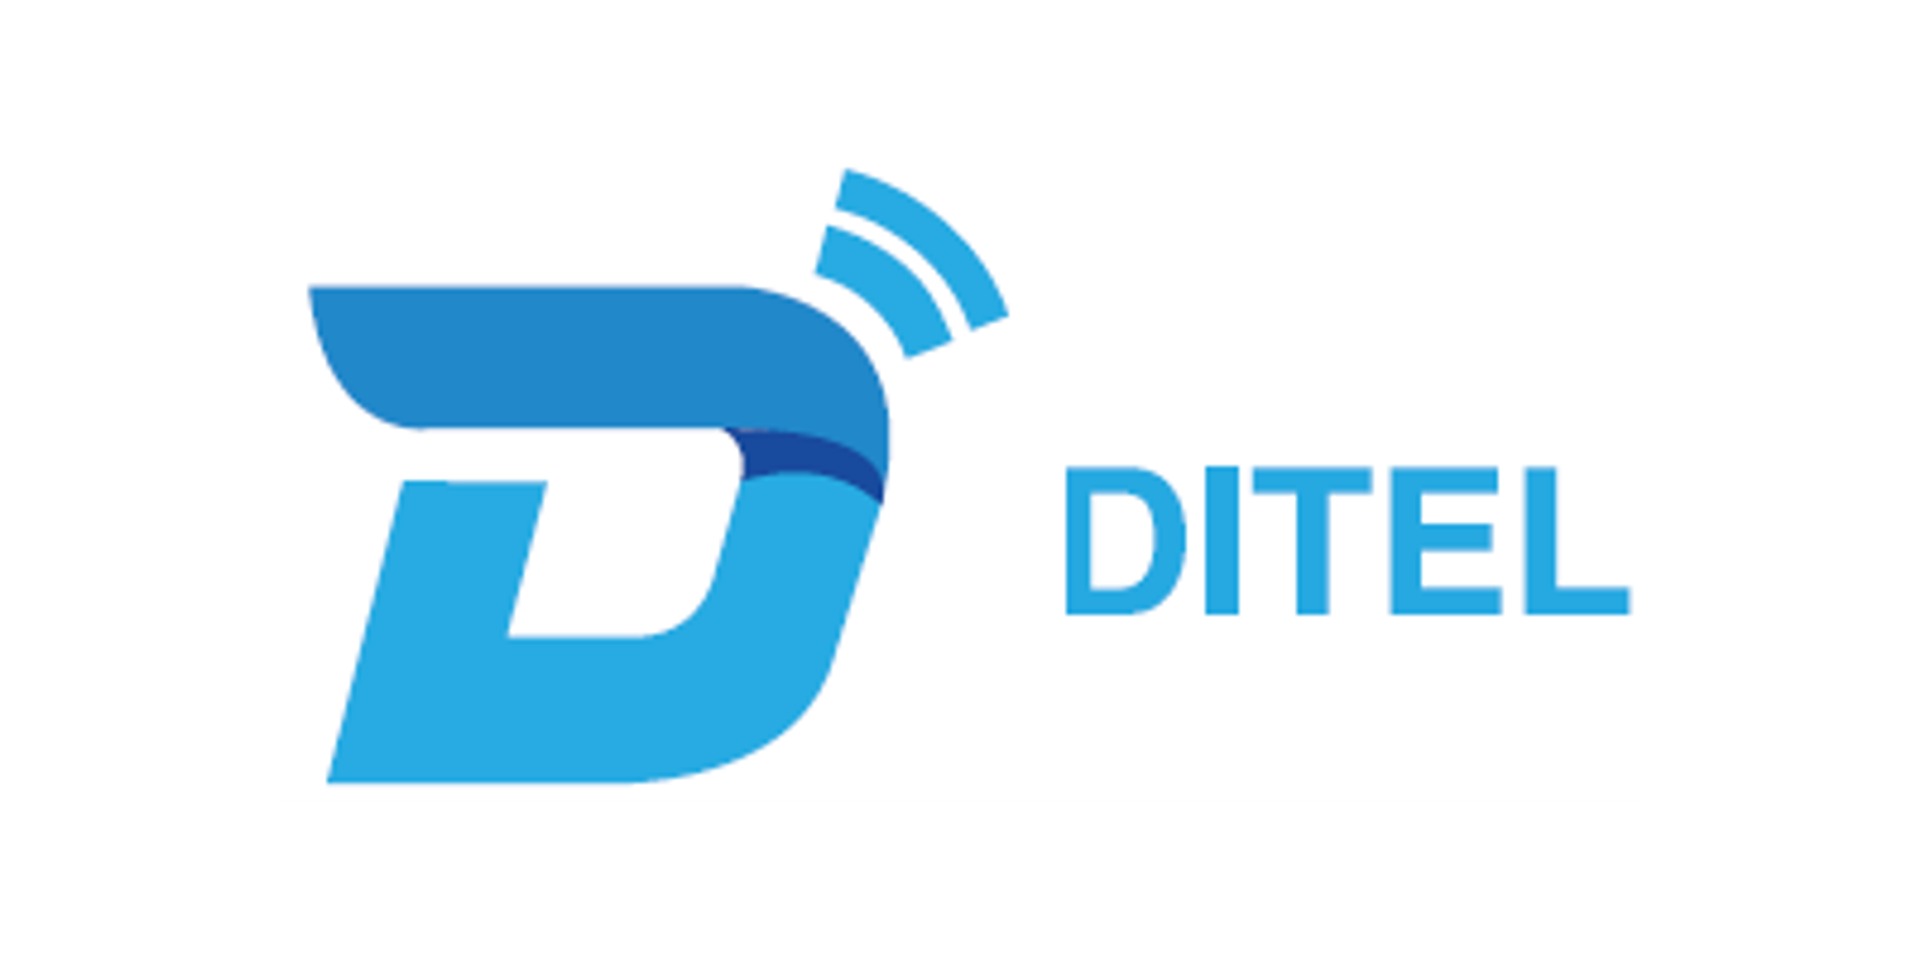 Ditel (ZheJiang) Communication Technology Co., Ltd.